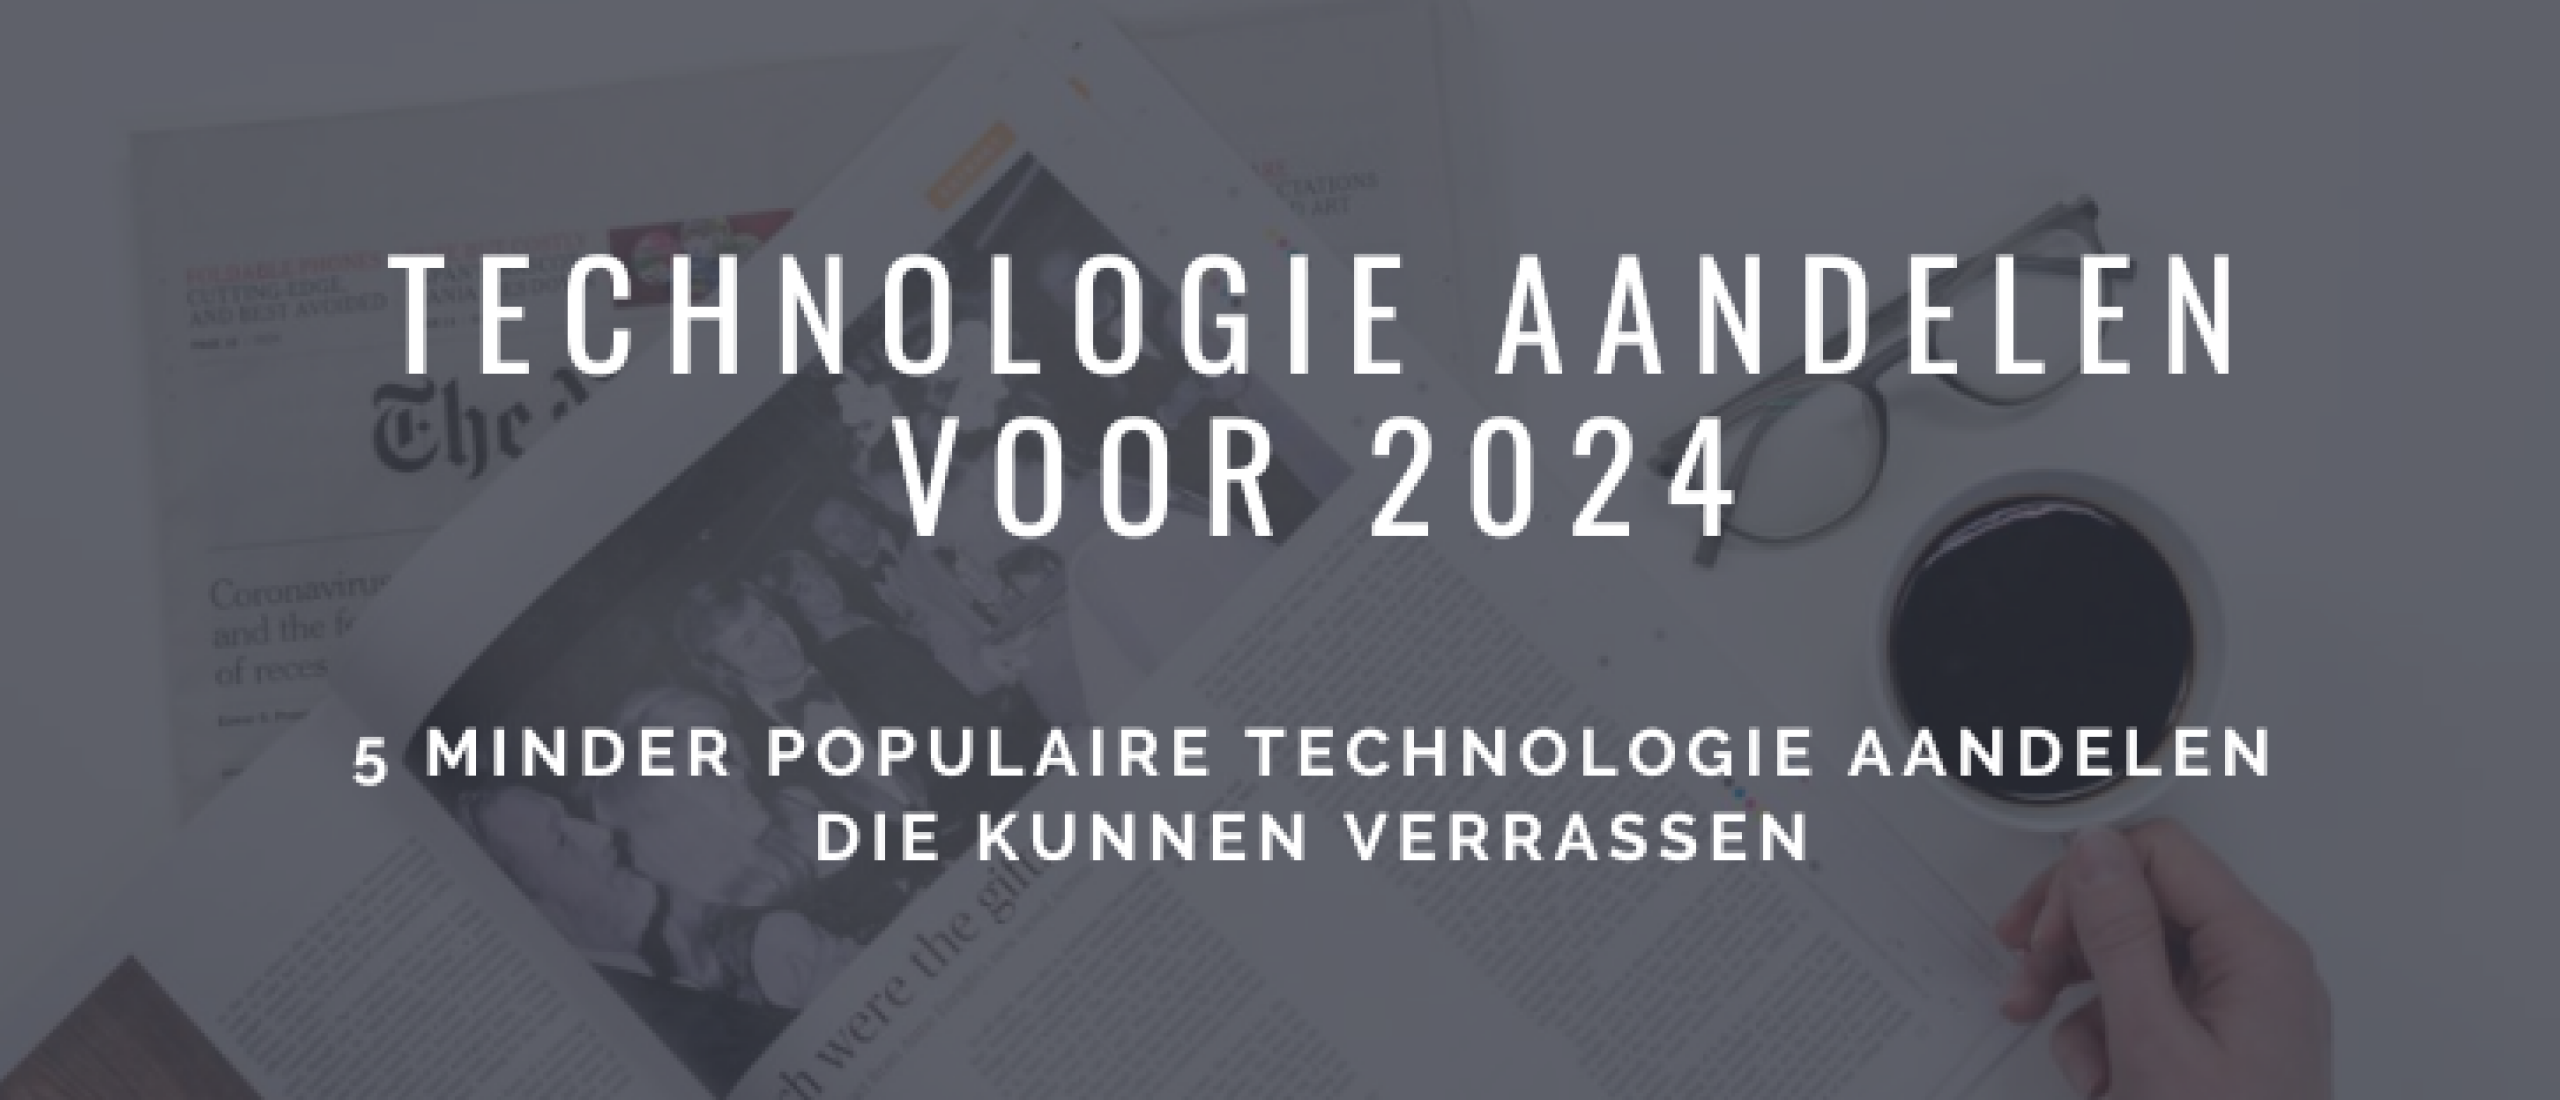 technologie-aandelen-kopen-2024